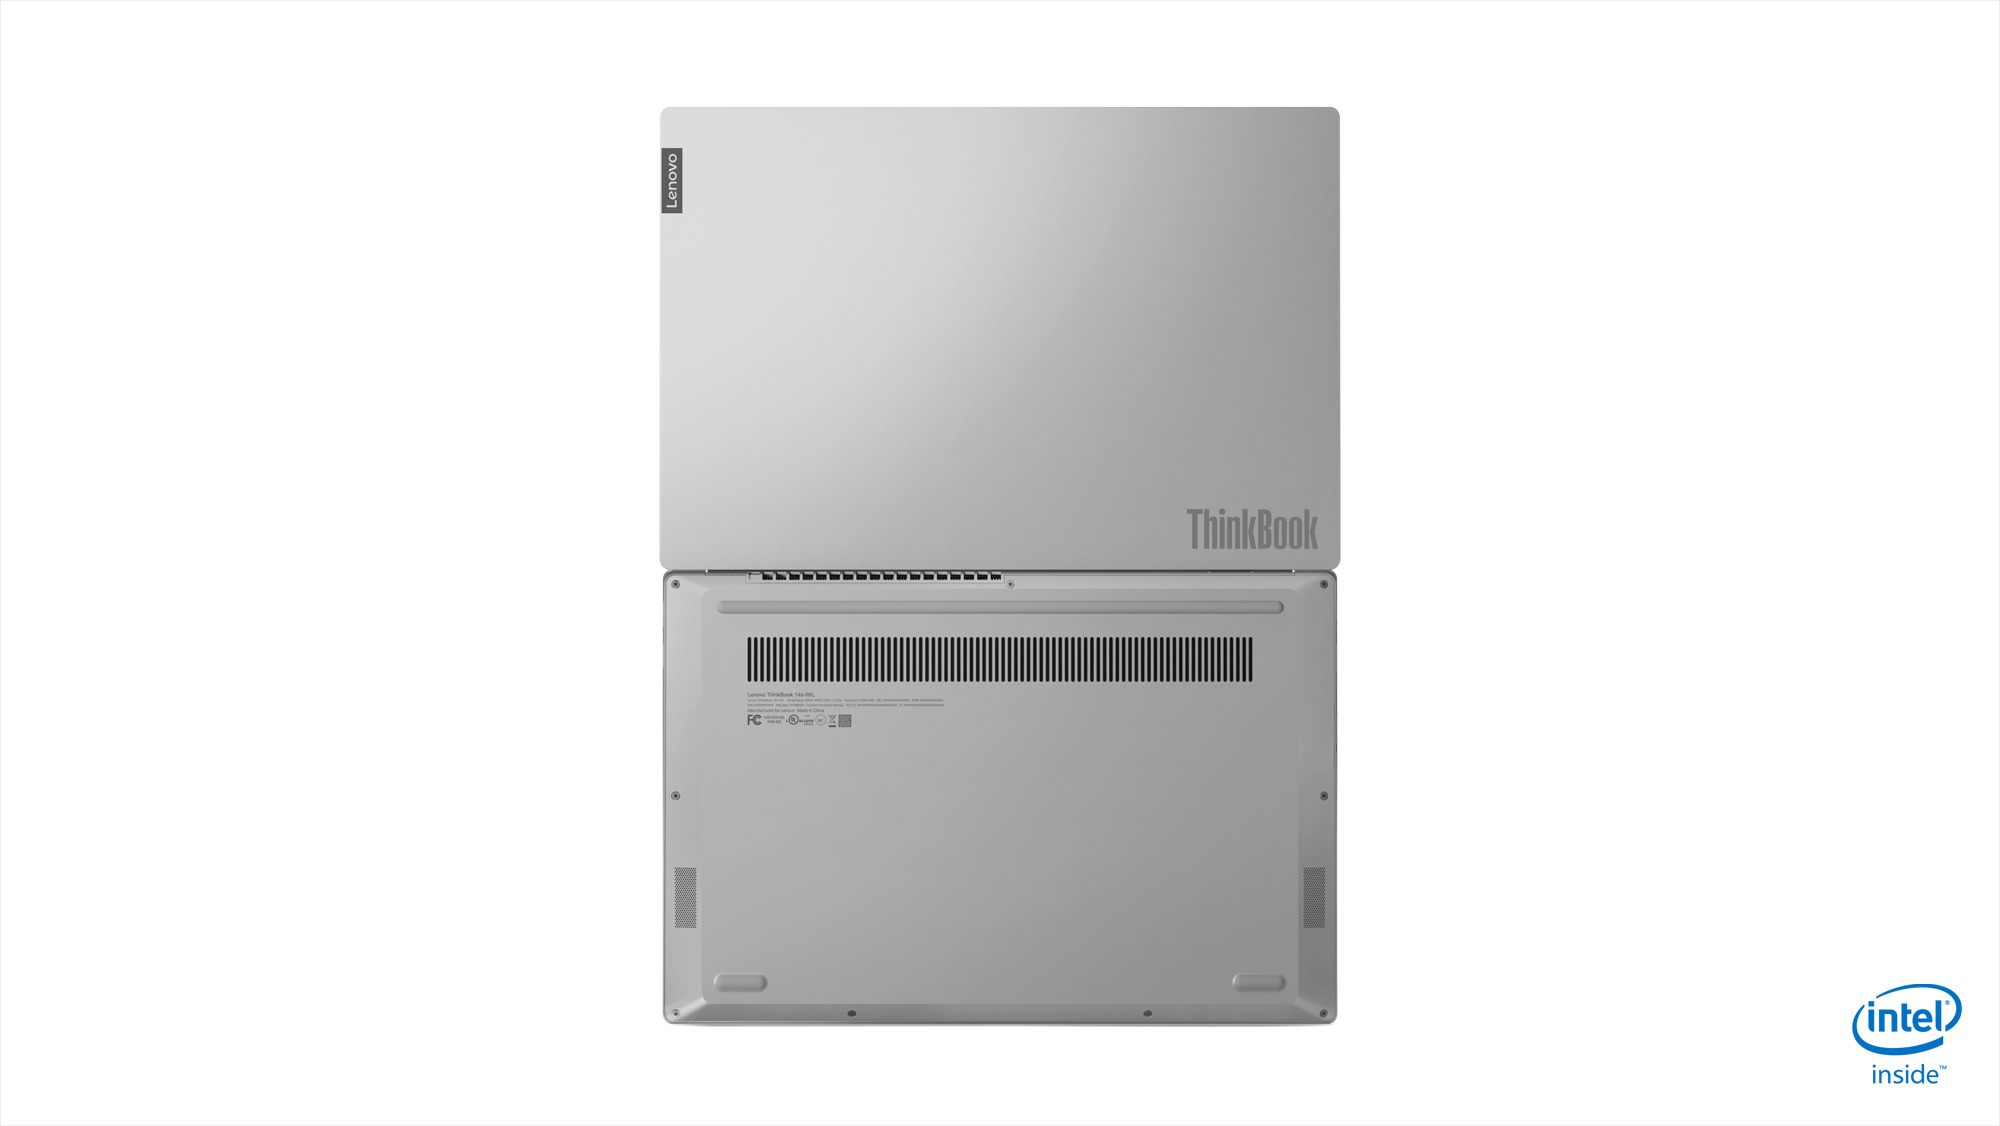 Image:Запознайте се с ThinkBook: Създаден за бизнес, предназначен за следващото поколение.